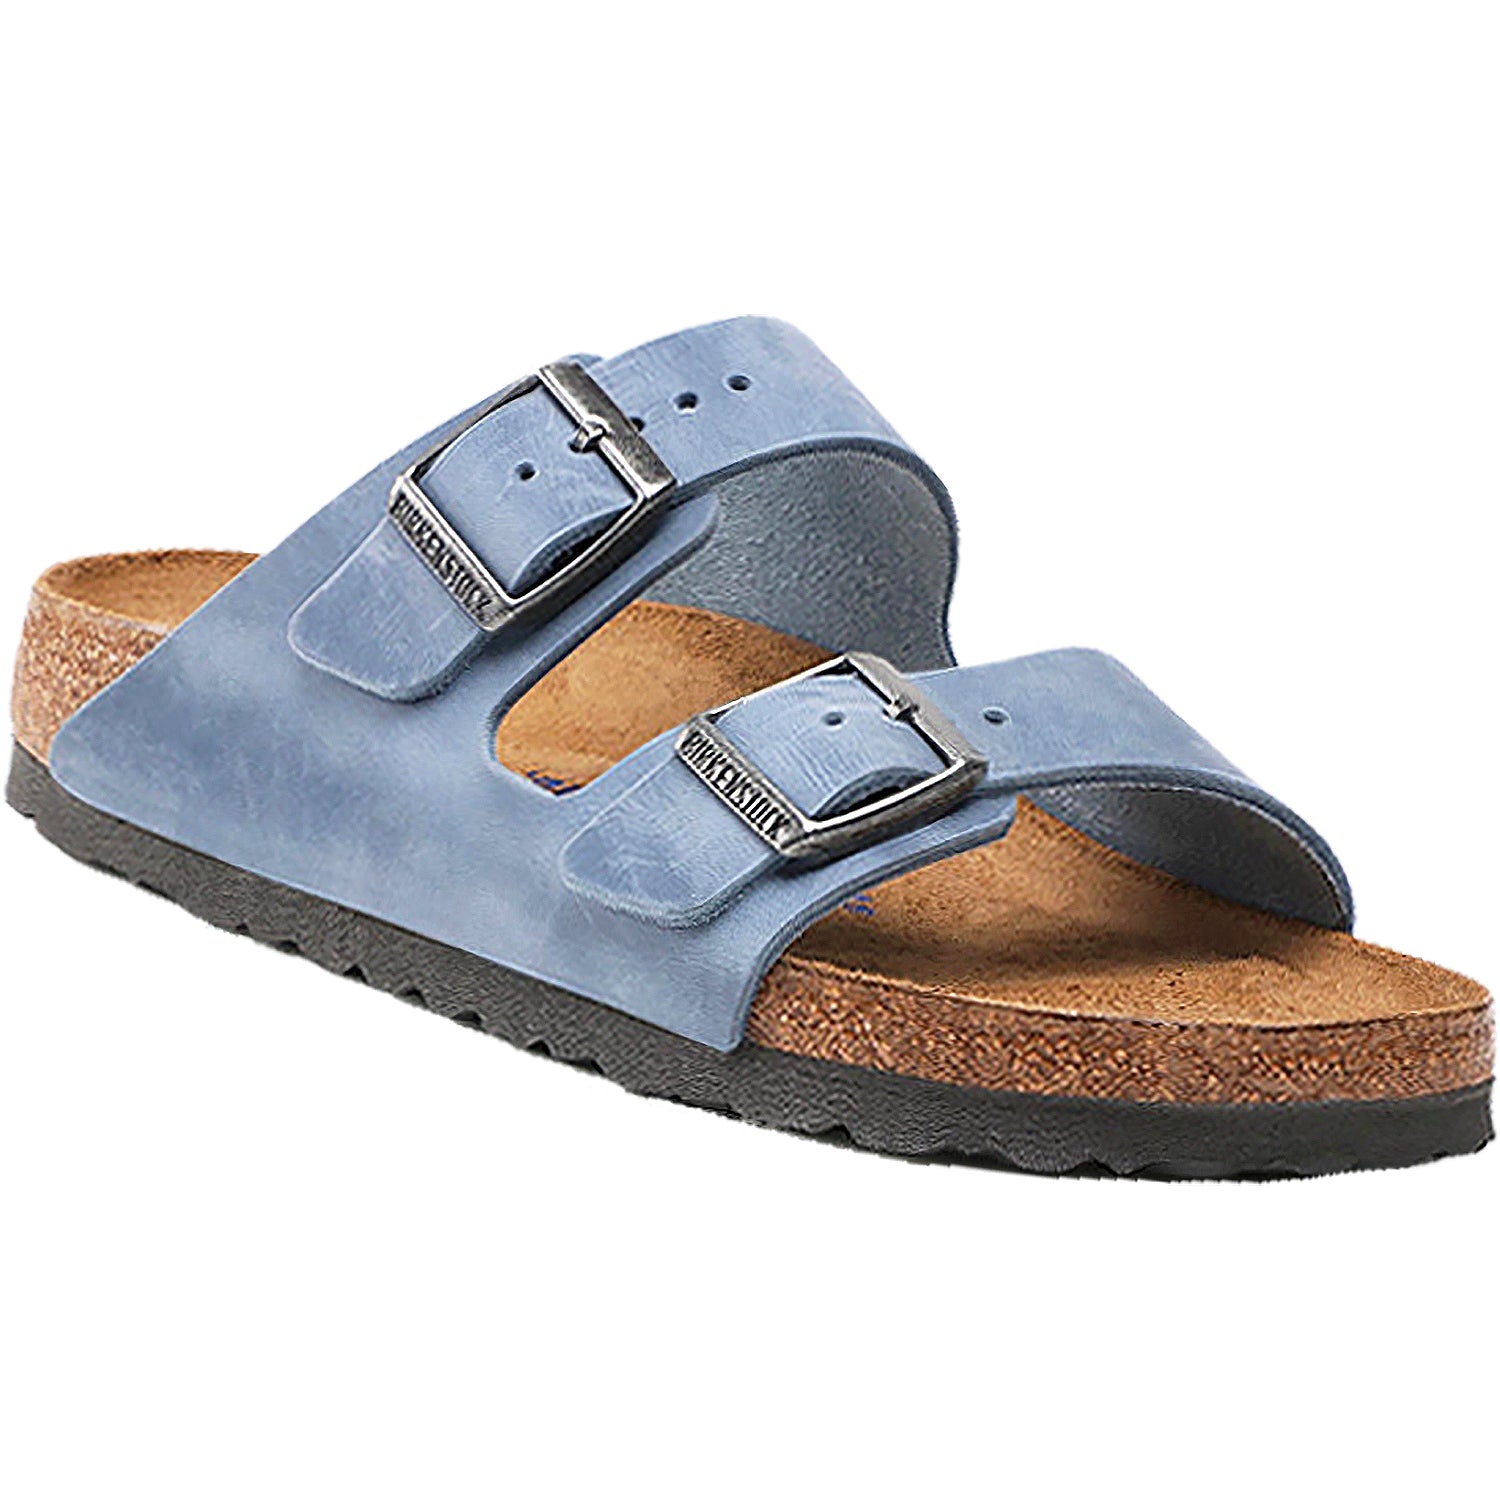 Birkenstock Arizona Dusty Blue | Women's Sandals | Footwear etc.